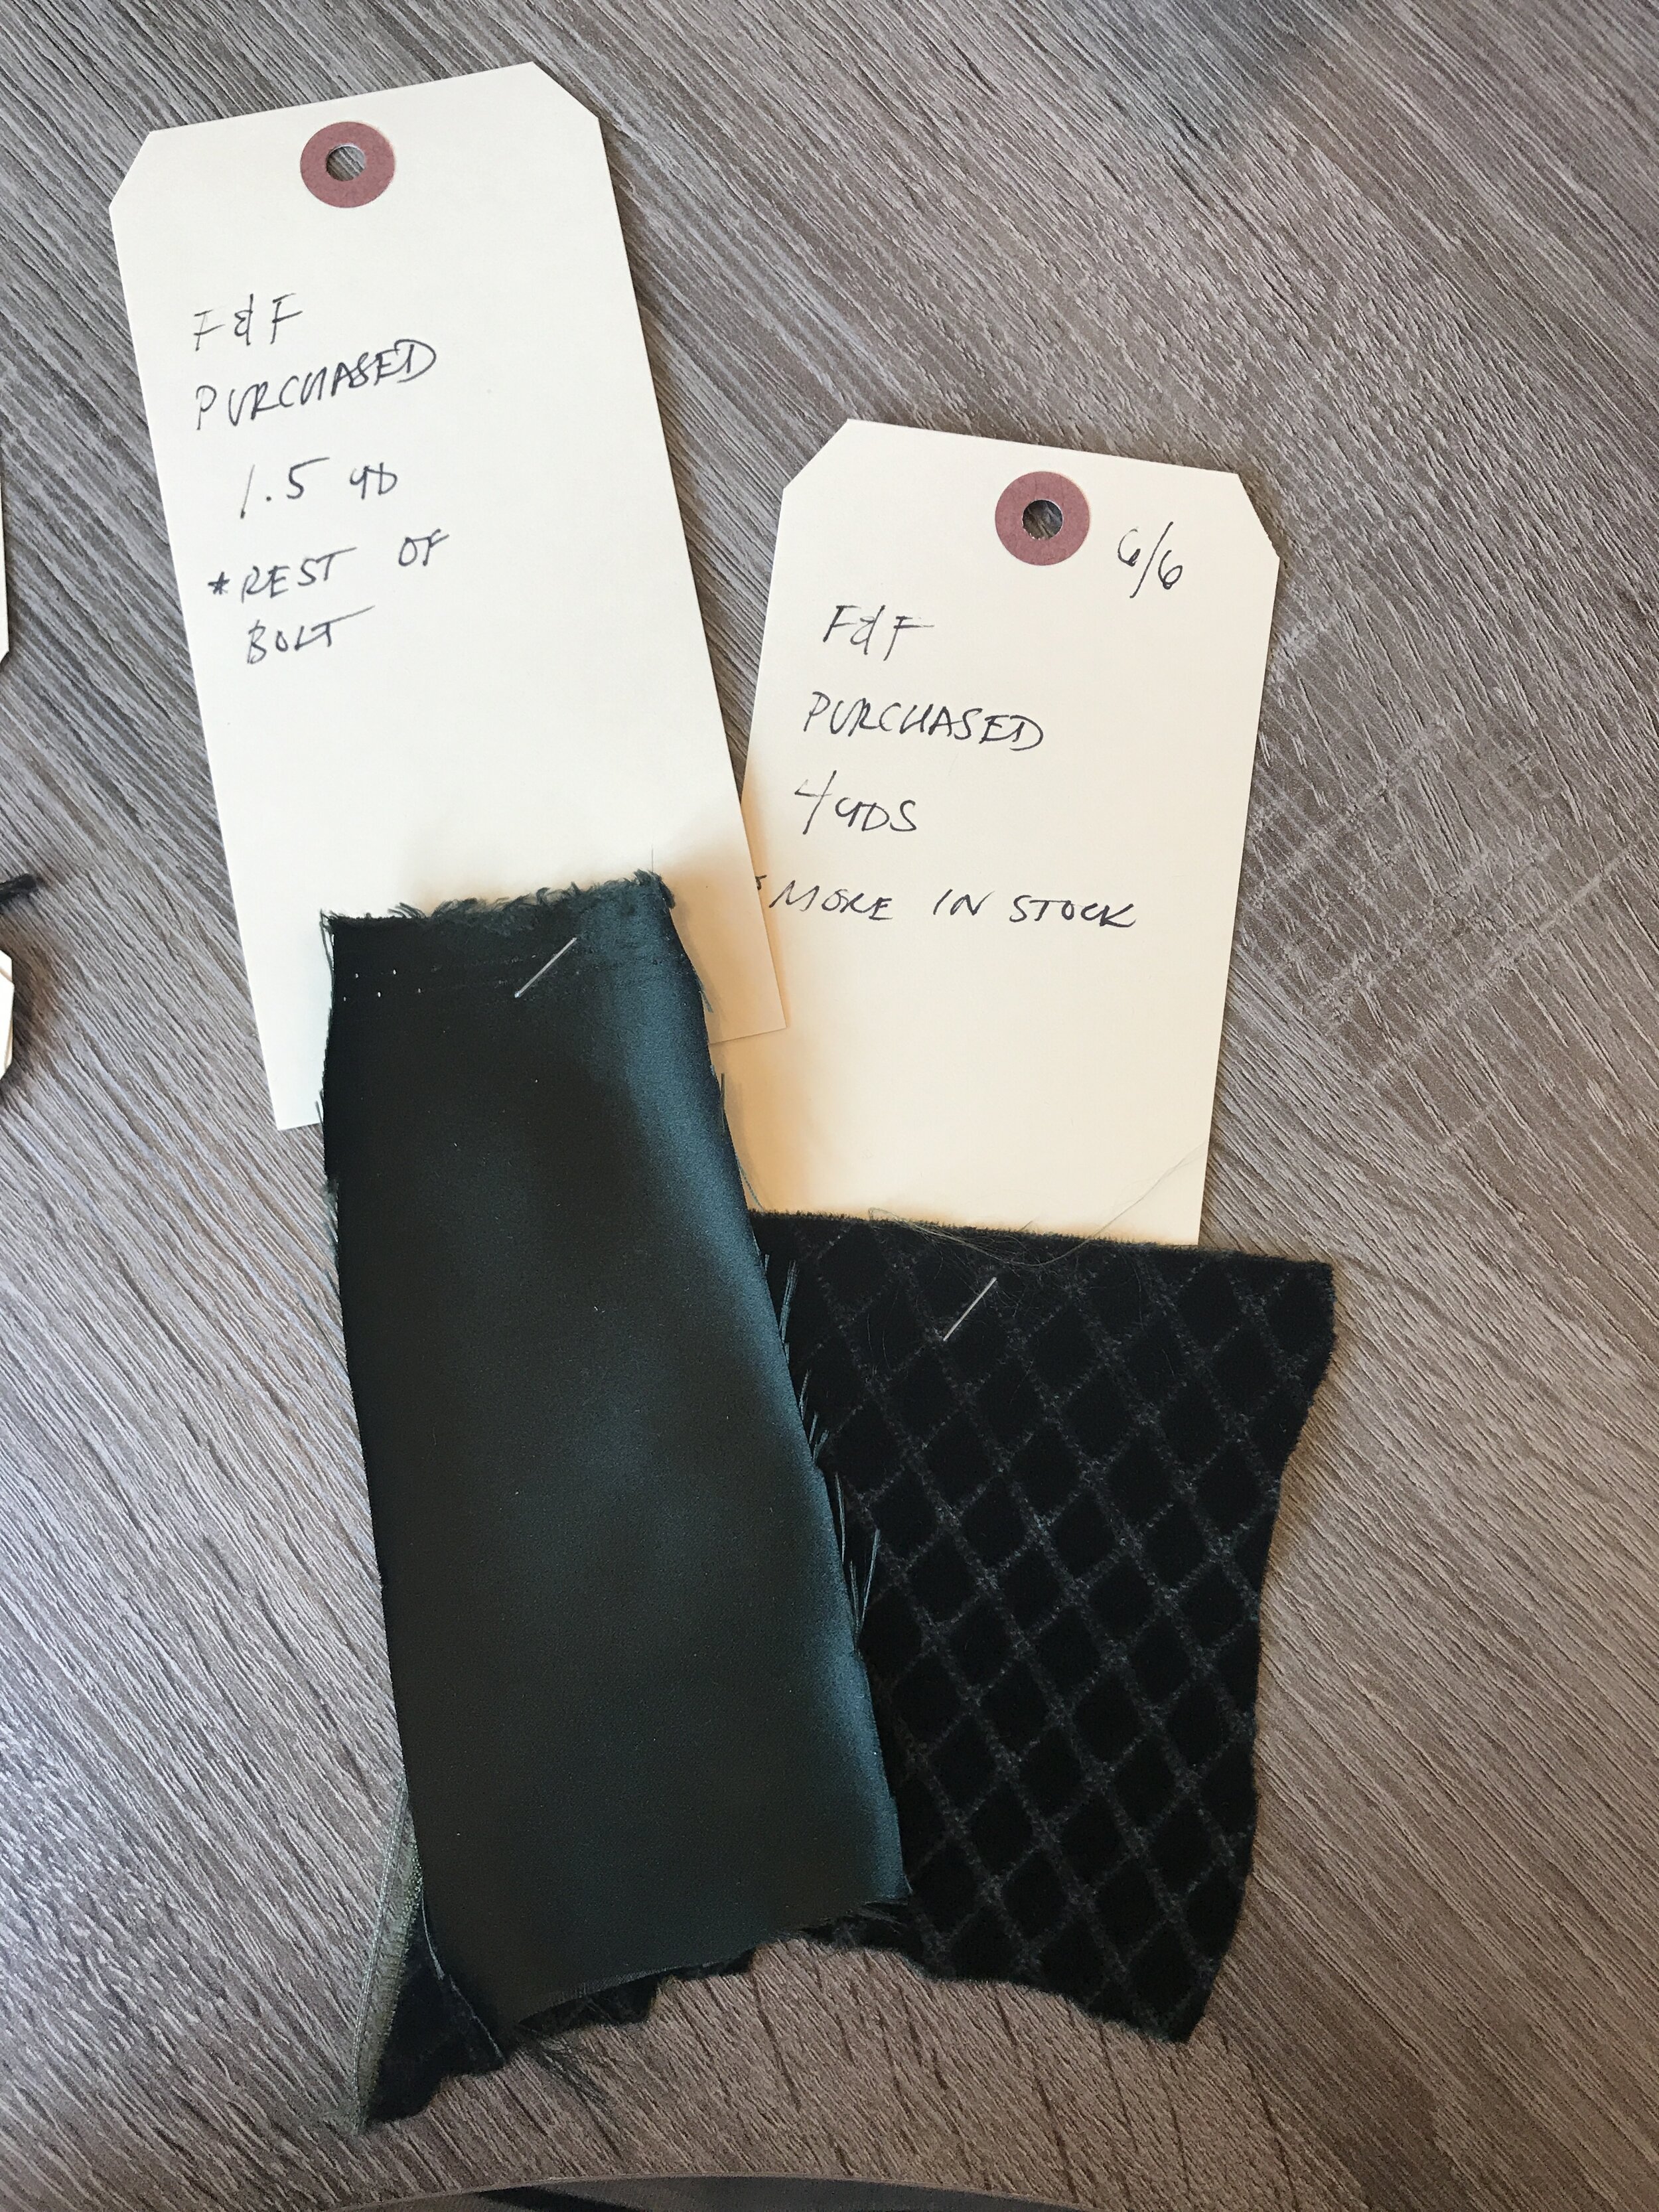 Fabrics used for "Meyer" smoking jacket